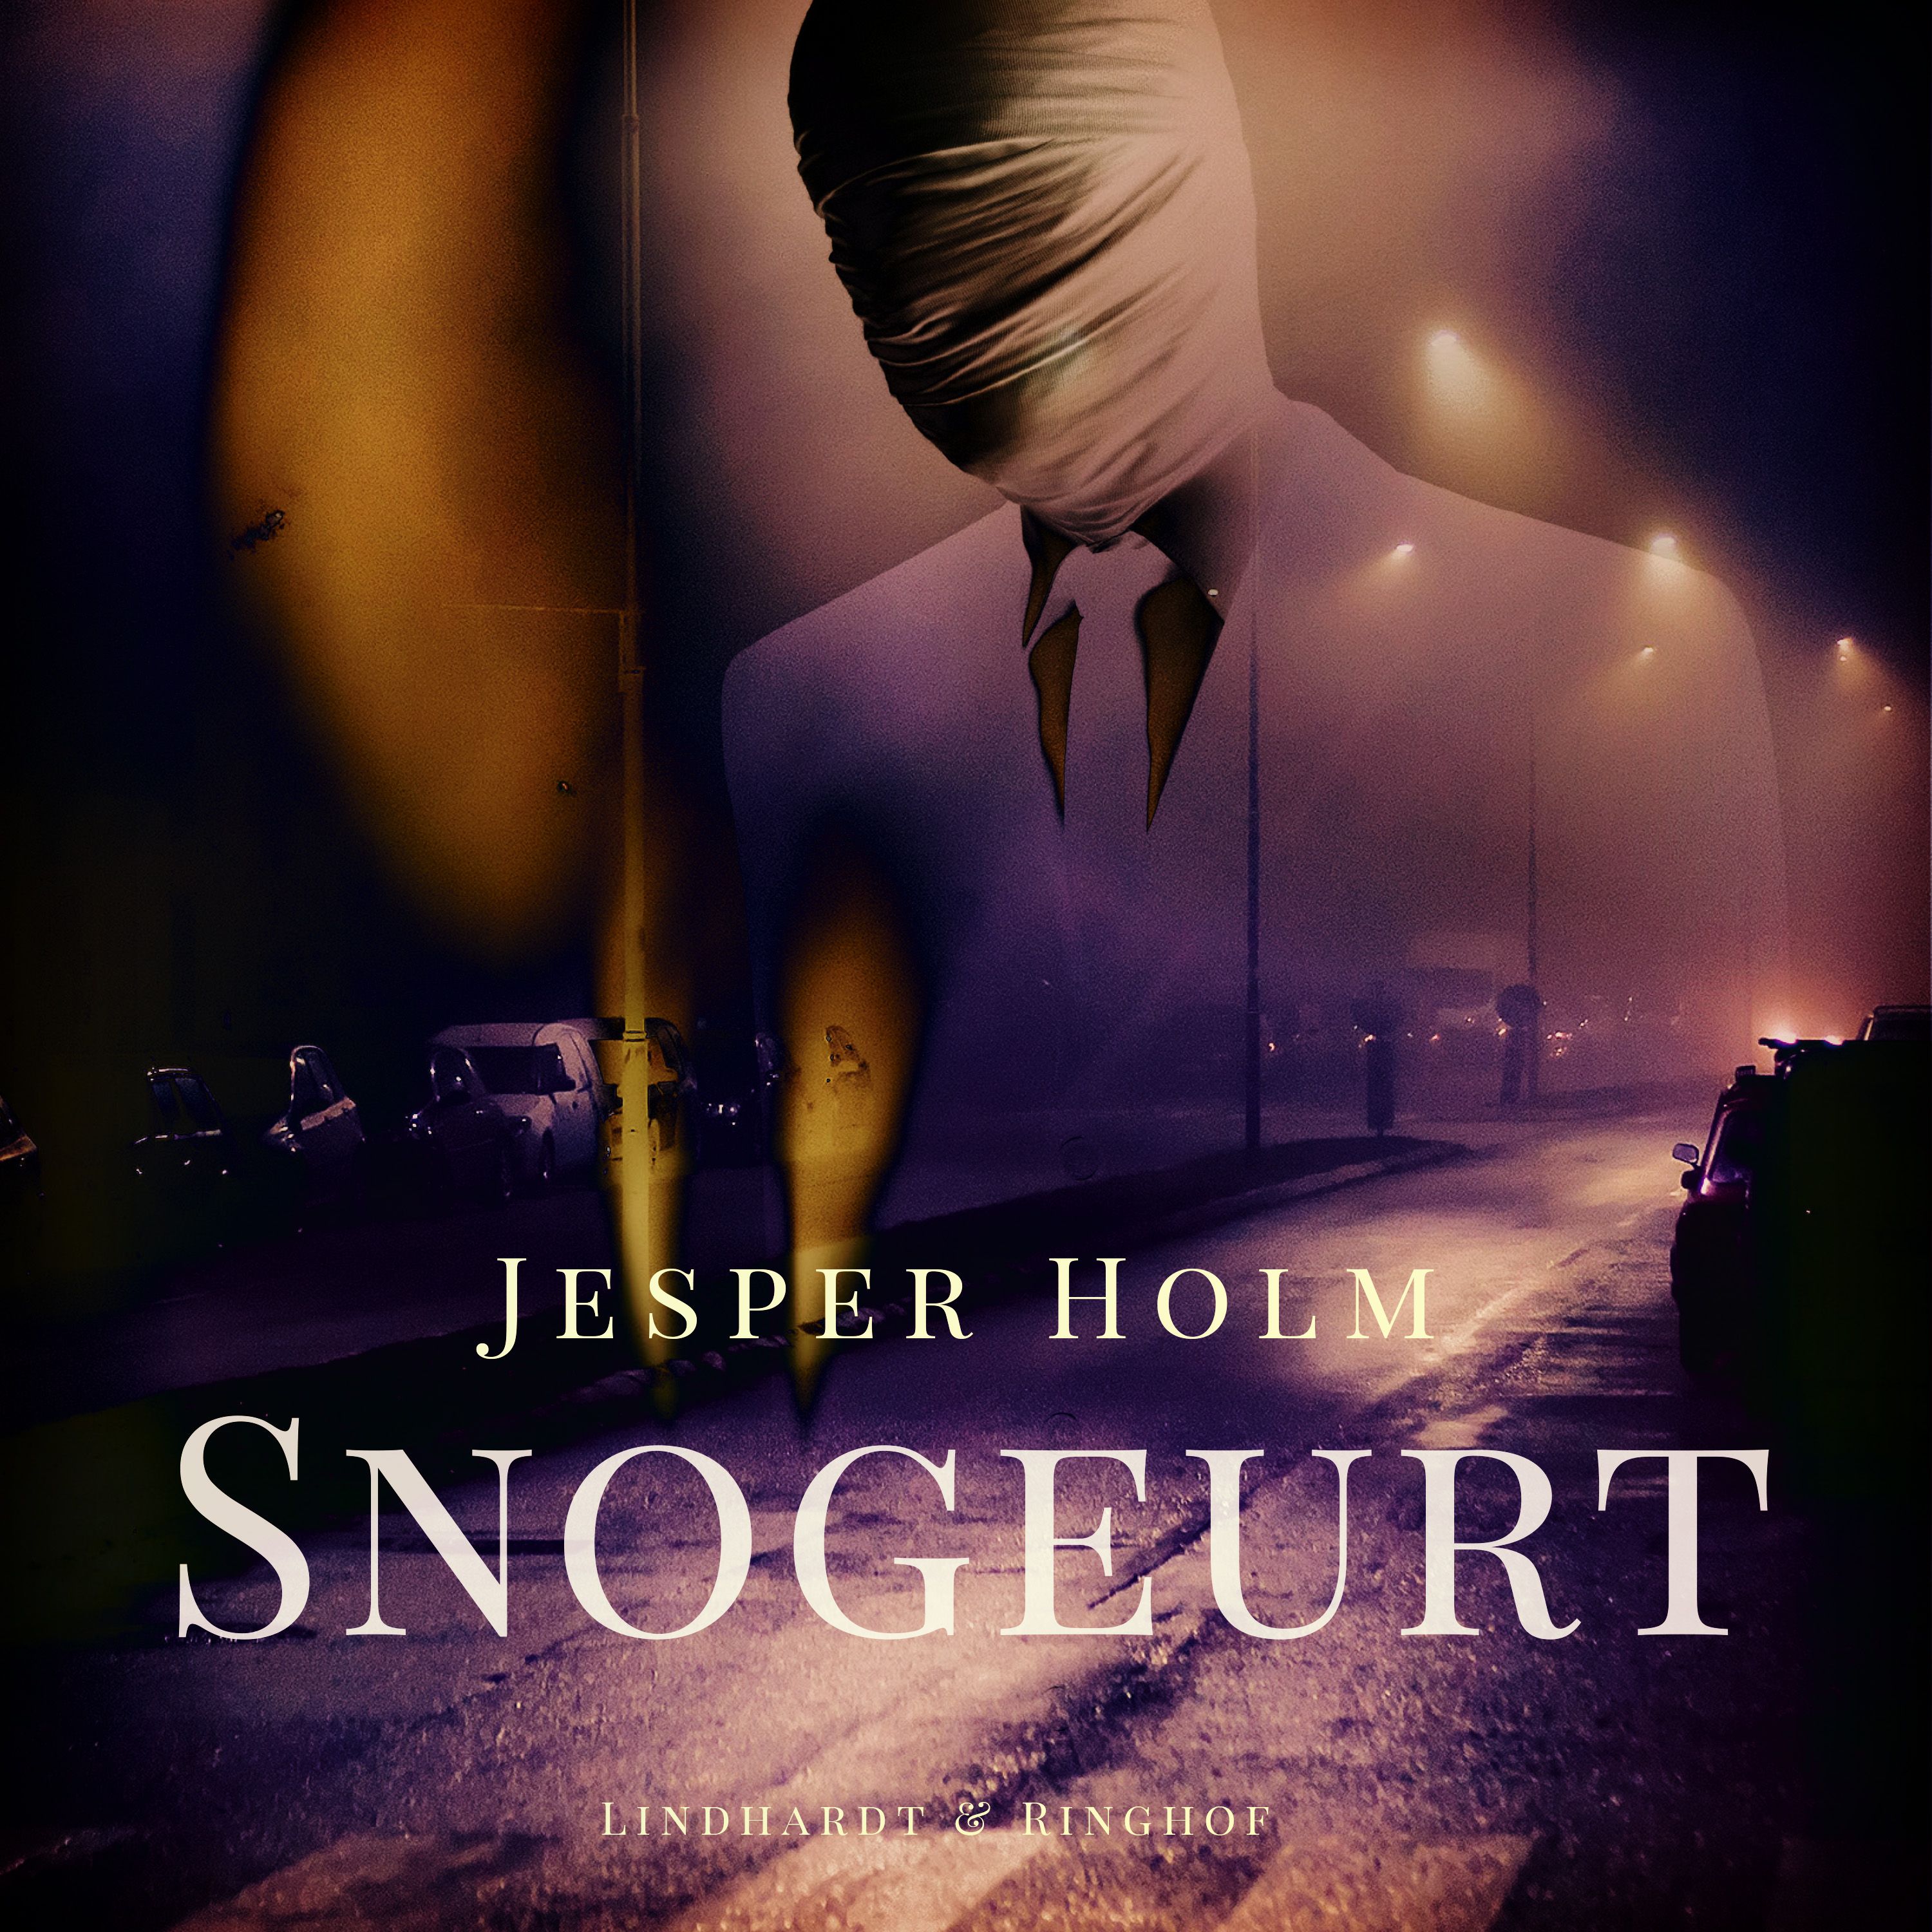 Snogeurt, lydbog af Jesper Holm